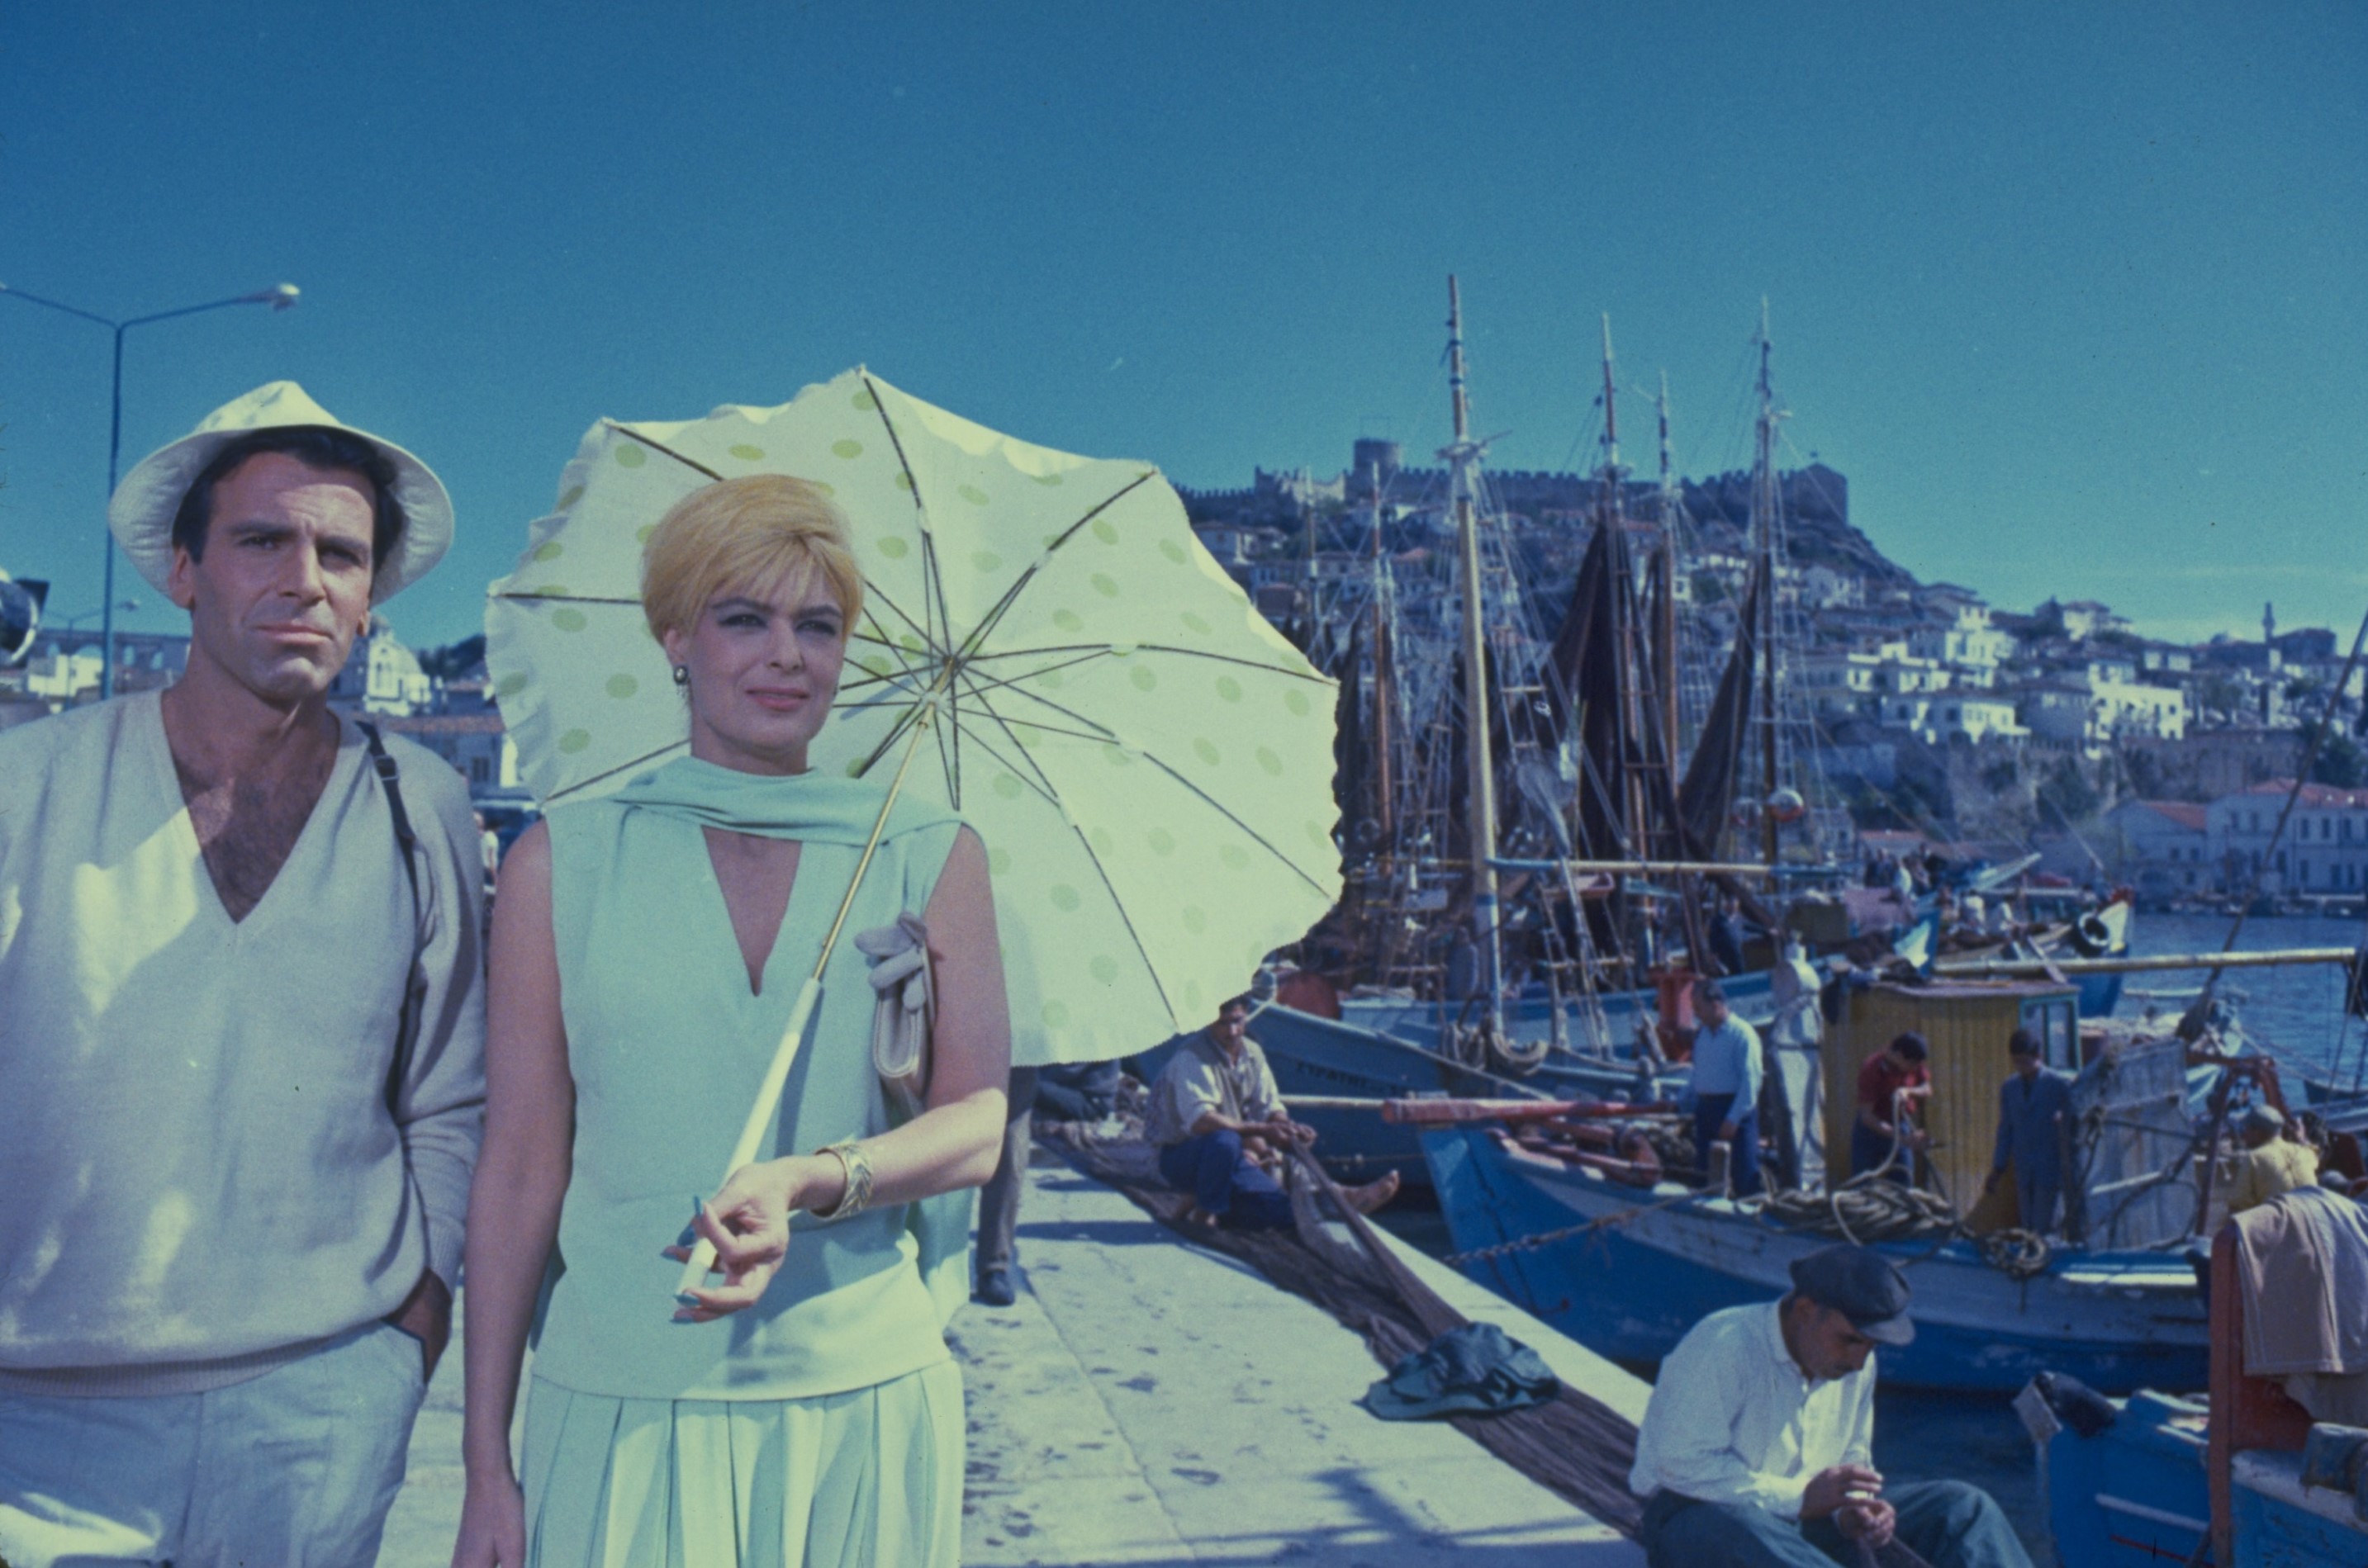 ΕΡΤ2: «Τοπ Καπί» – Η ταινία με την αξέχαστη Μελίνα Μερκούρη που άφησε εποχή